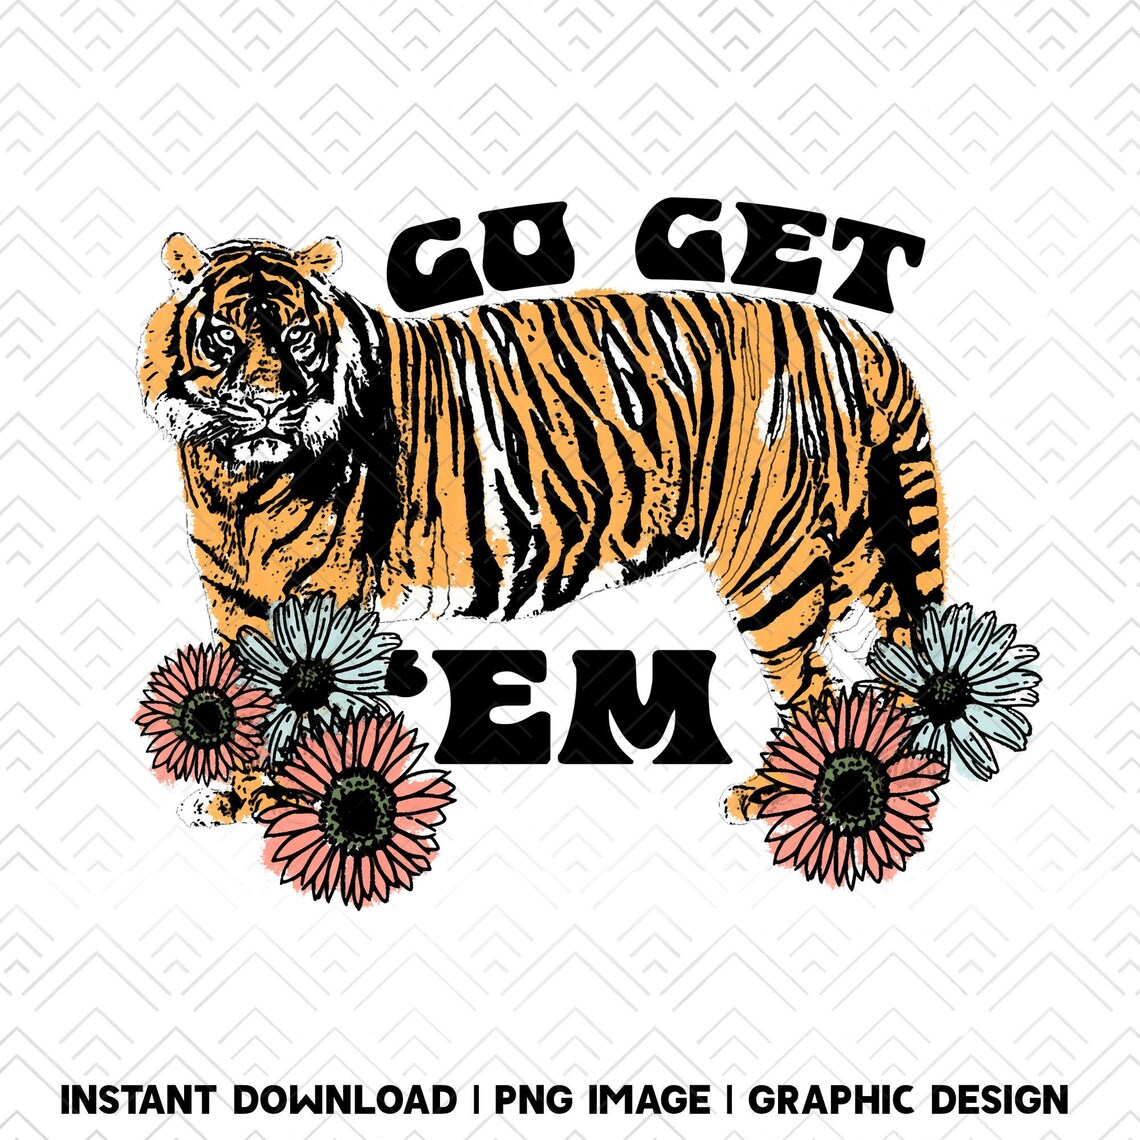 Go Get Em Tiger Motivational Retro Sublimations Vintage - Etsy